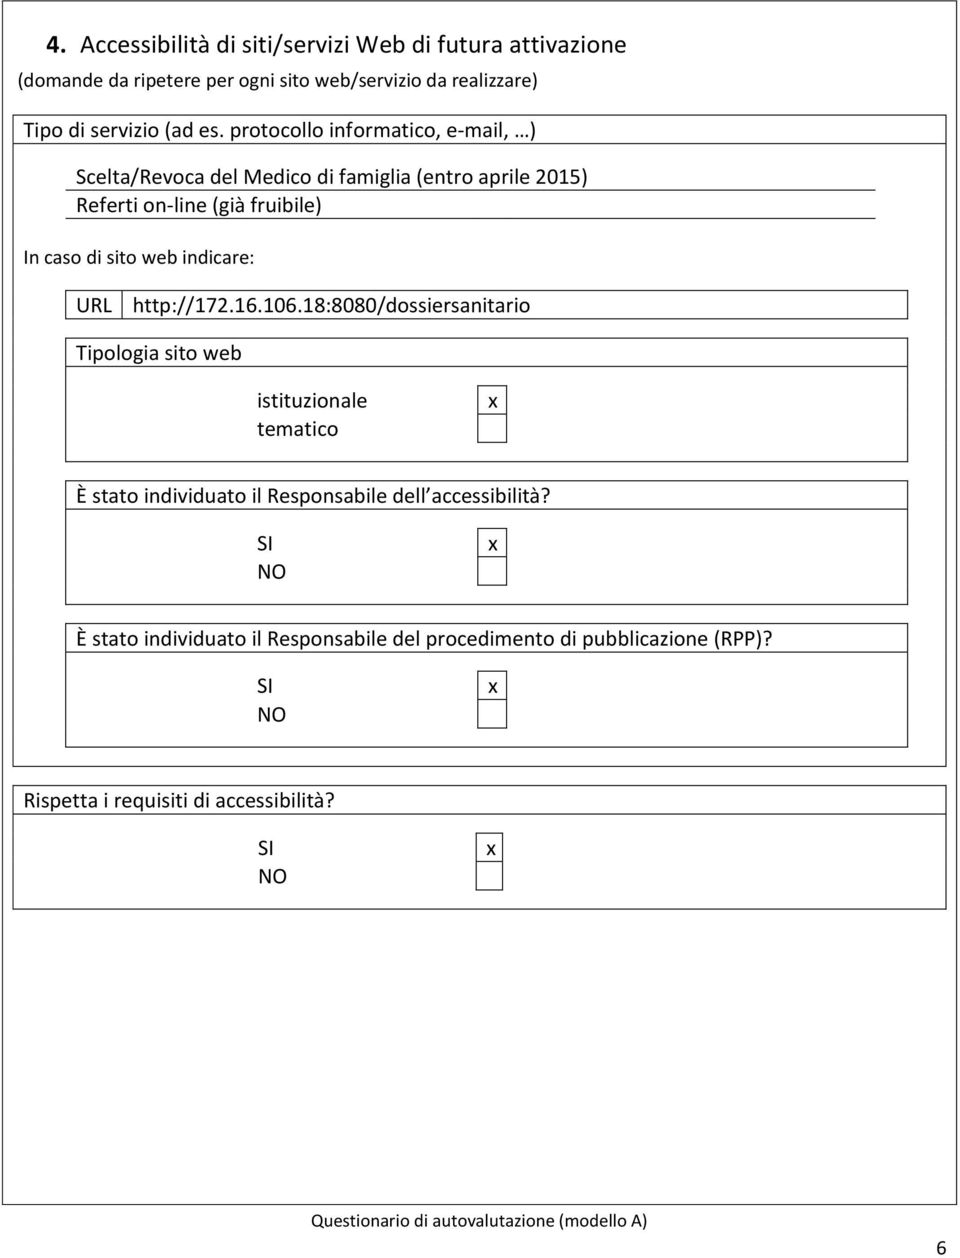 prtcll infrmatic, e-mail, ) Scelta/Revca del Medic di famiglia (entr aprile 2015) Referti n-line (già fruibile) In cas di sit web